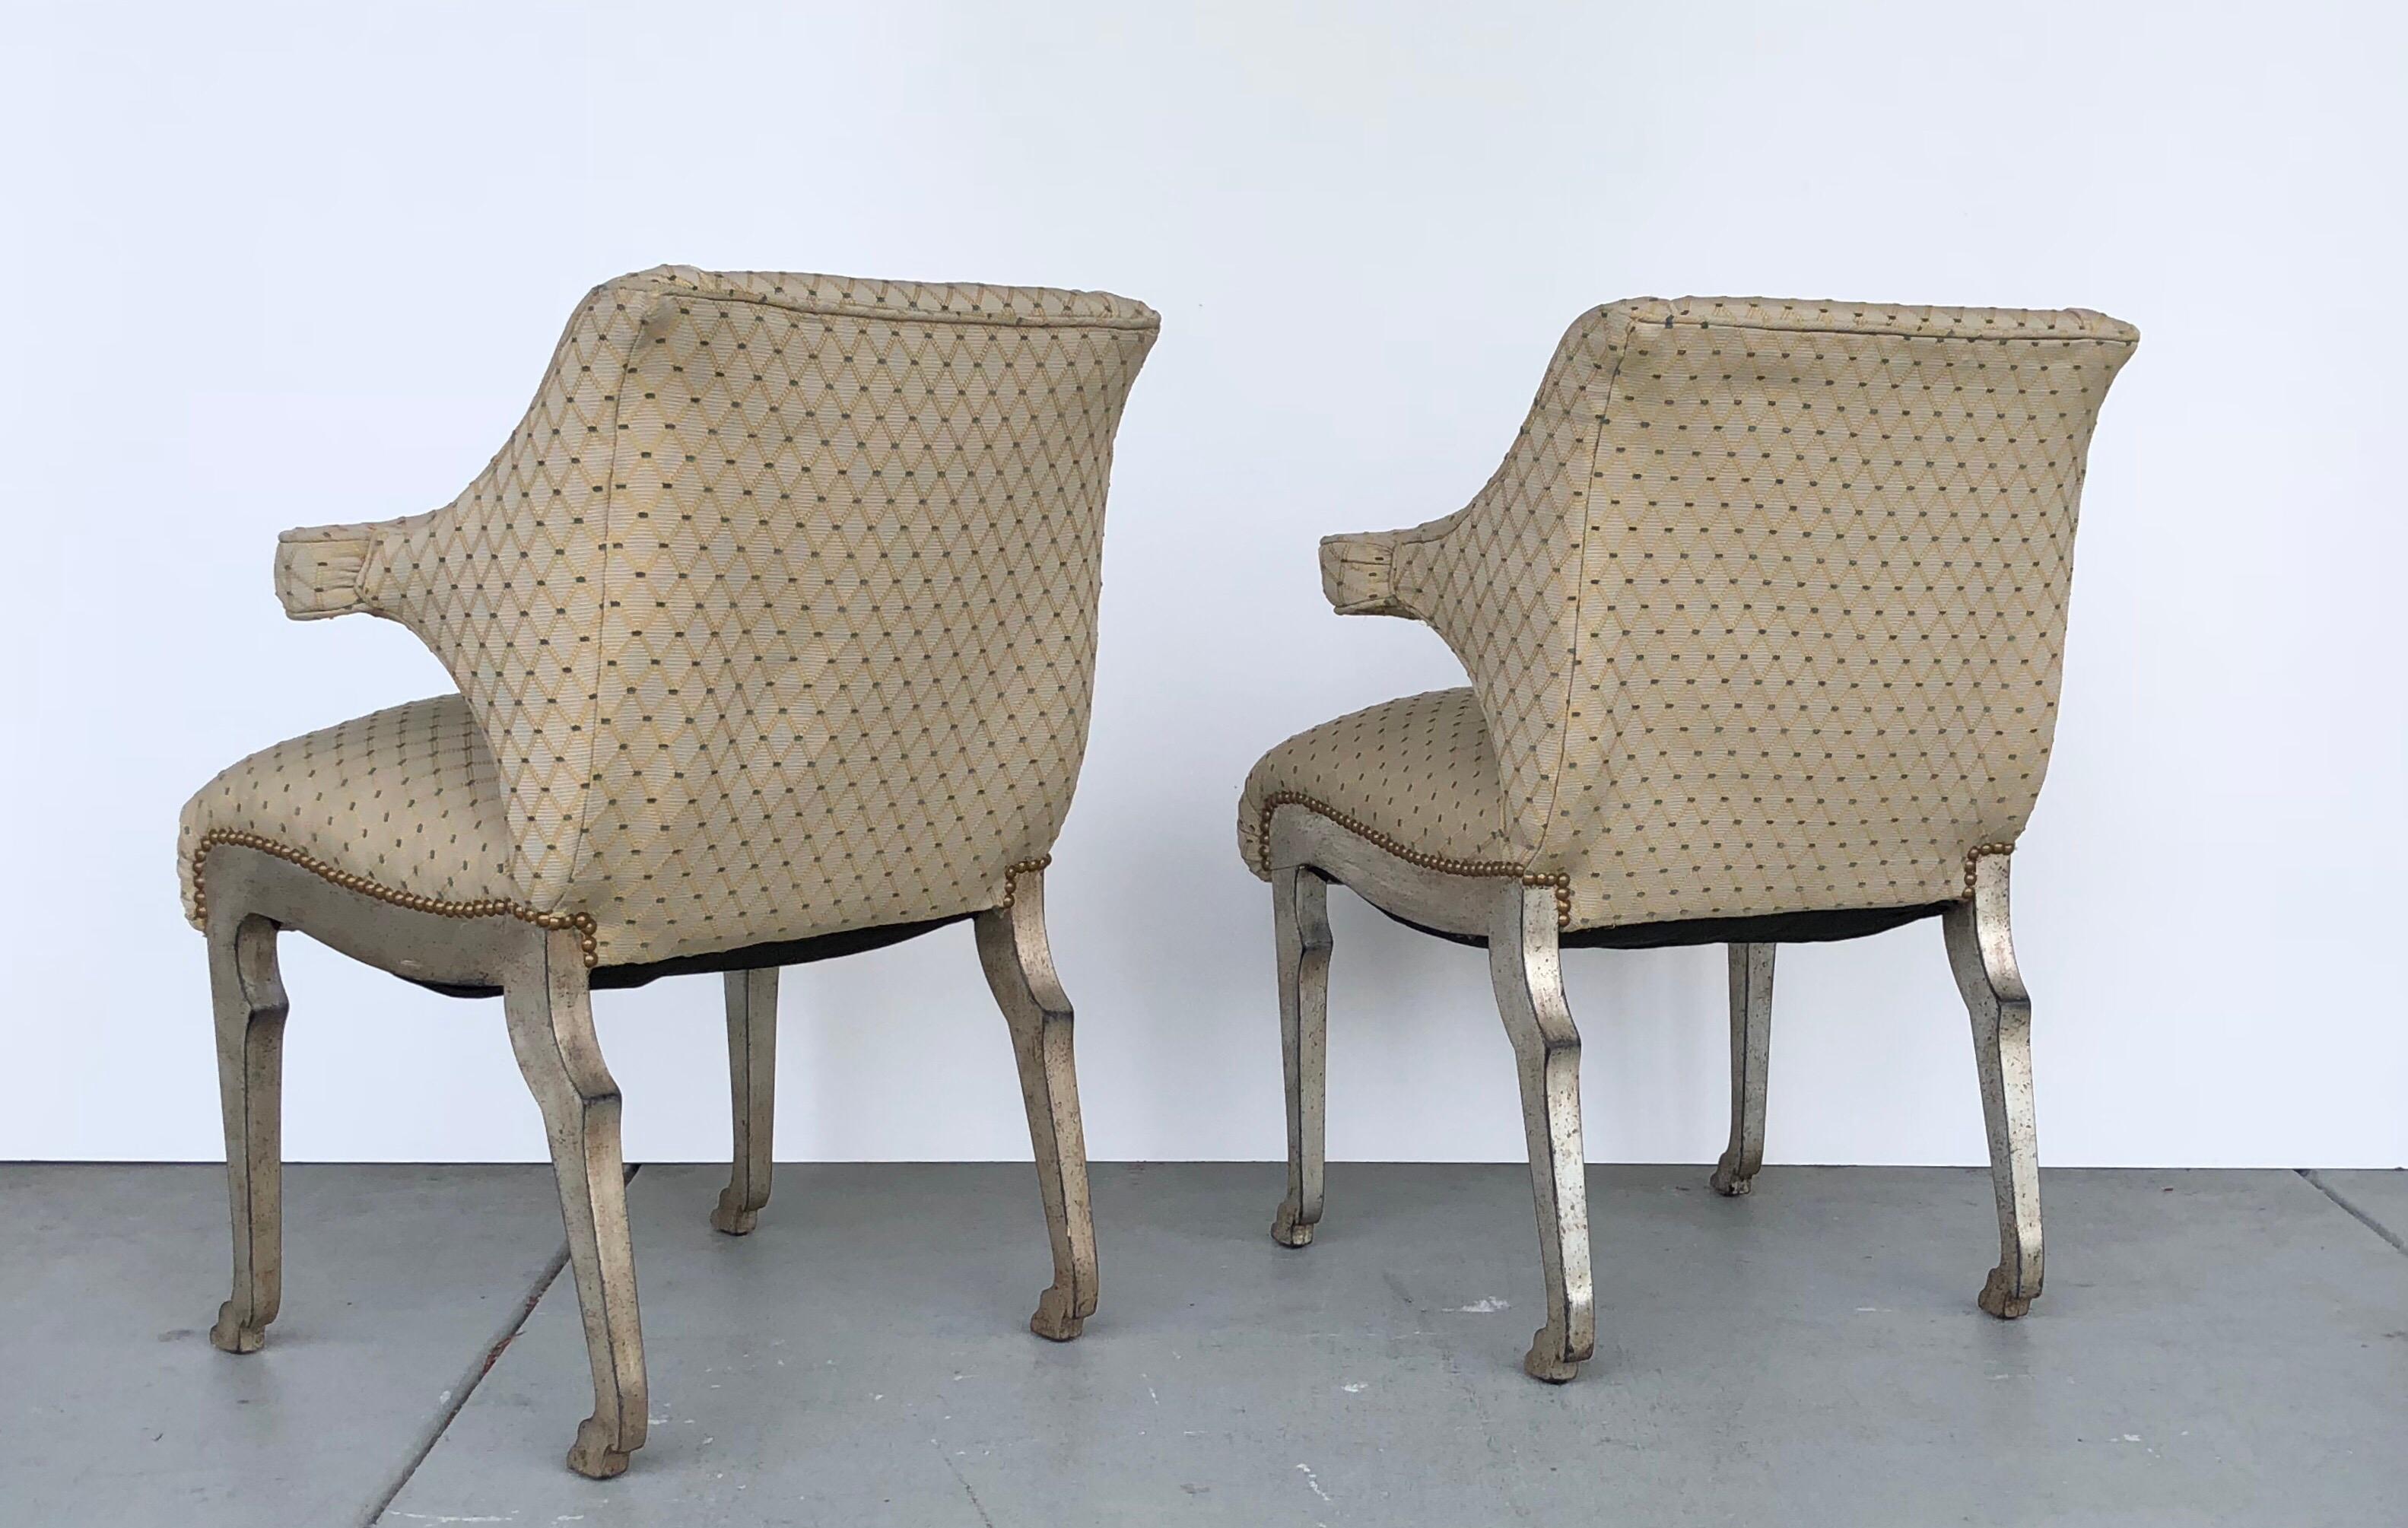 Ein Paar Stühle aus der Jahrhundertmitte mit wunderschönen Tierbeinen. Die Holzbeine sind mit Silber vergoldet. Die Sitze sind gepolstert. Großartiges Design, das aus jedem Blickwinkel atemberaubend ist.